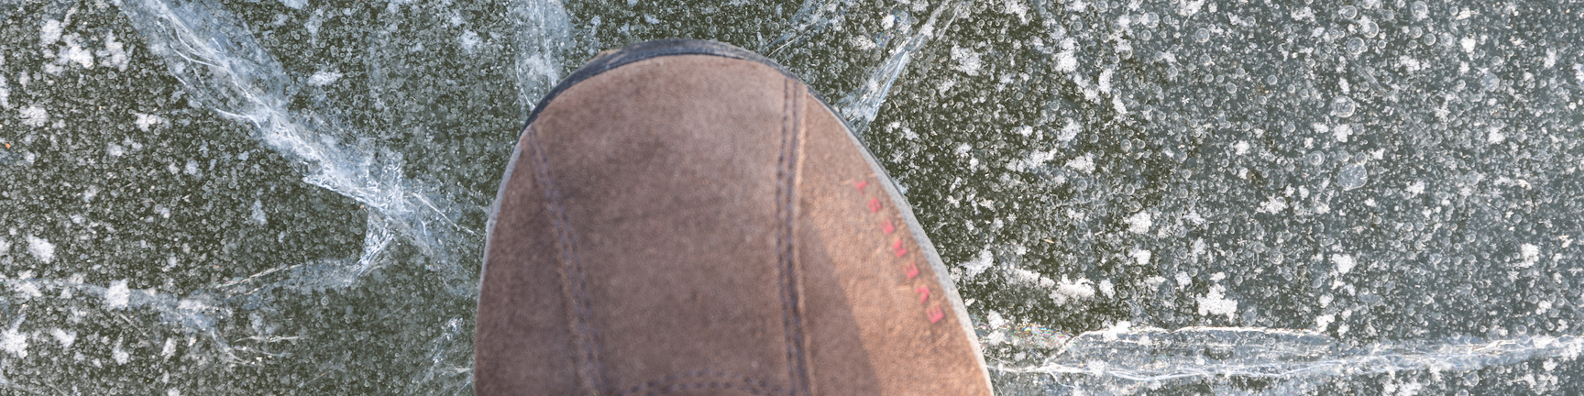 Bild: Schuhspitze auf brechendem Eis